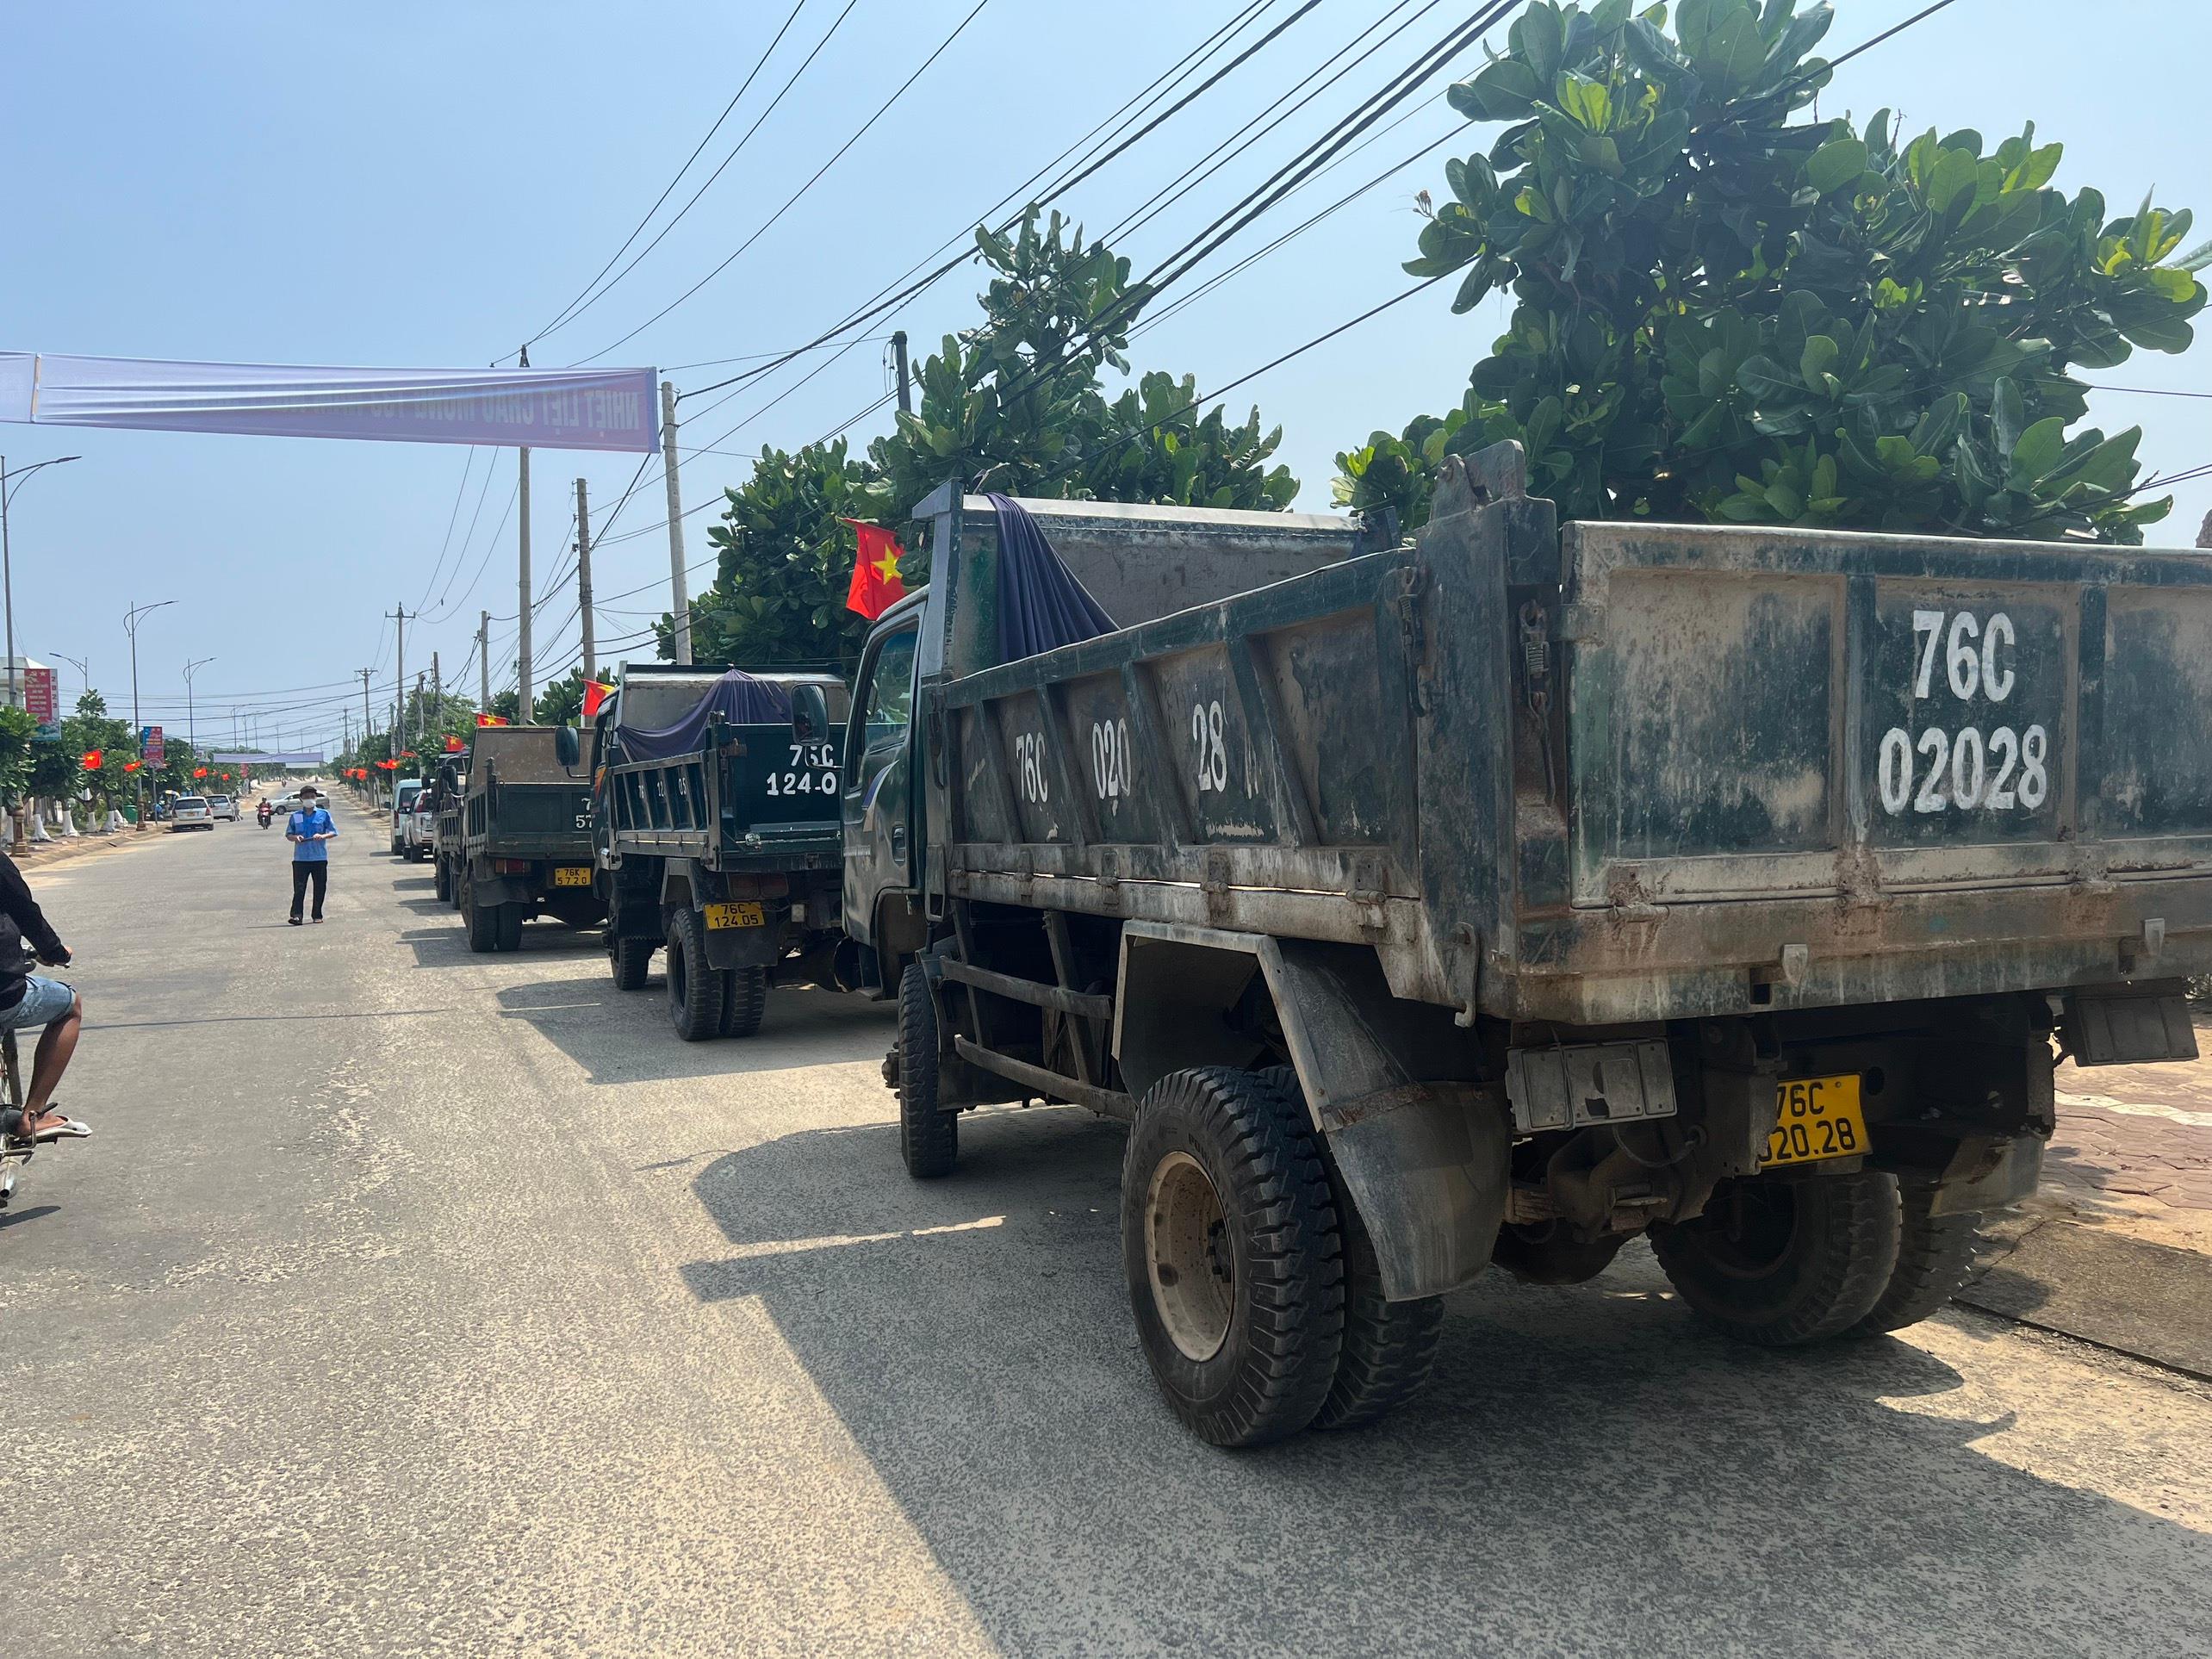 Trung tâm Đăng kiểm xe cơ giới Quảng Ngãi (76.01S) tổ chức đăng kiểm cho xe cơ giới đang hoạt động trên địa bàn huyện đảo Lý Sơn